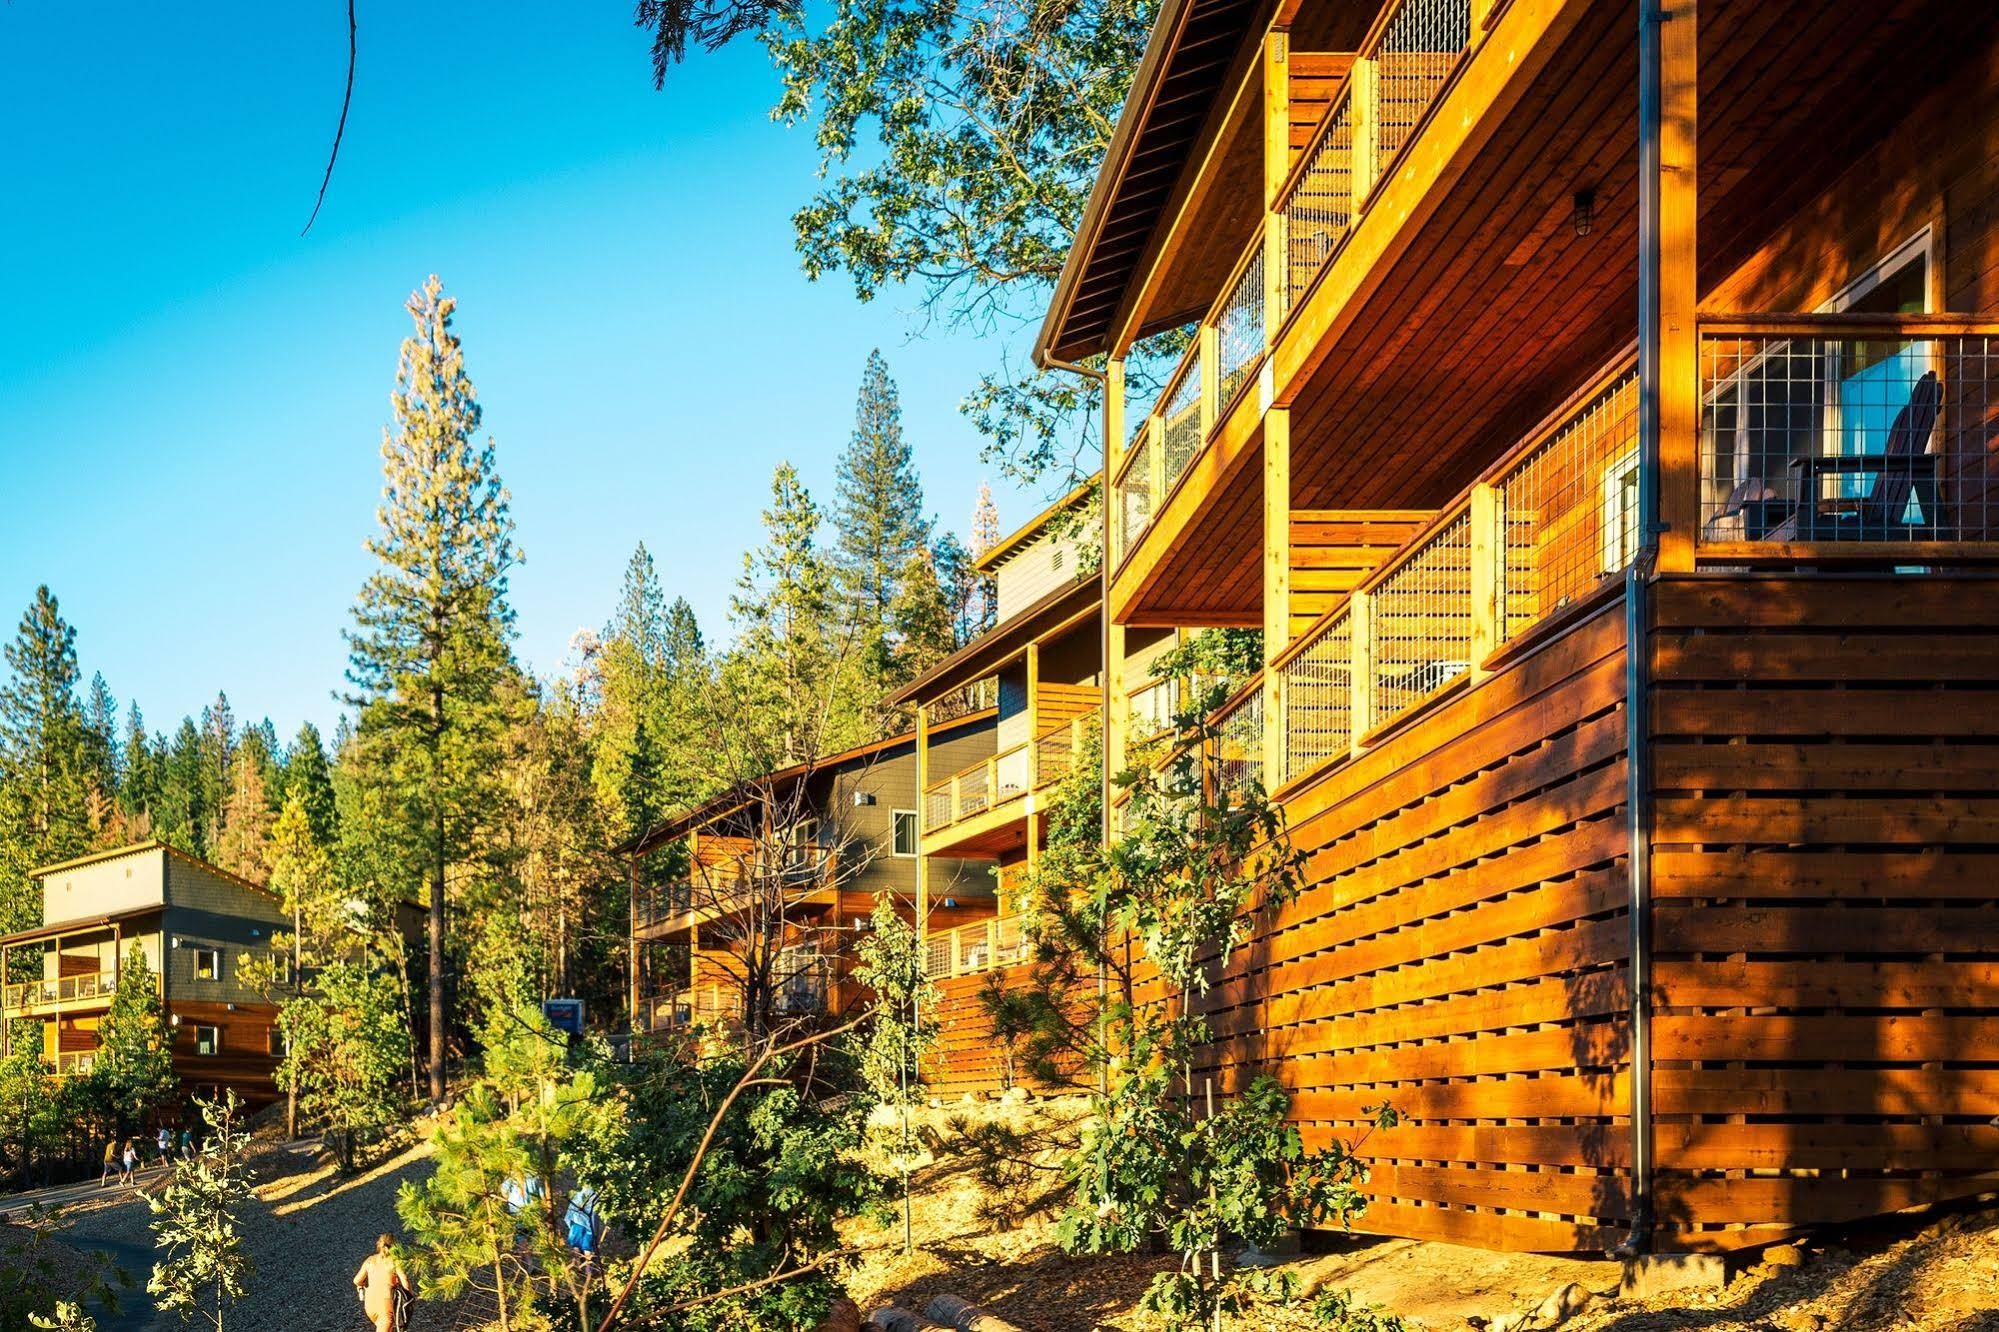 Rush Creek Lodge at Yosemite